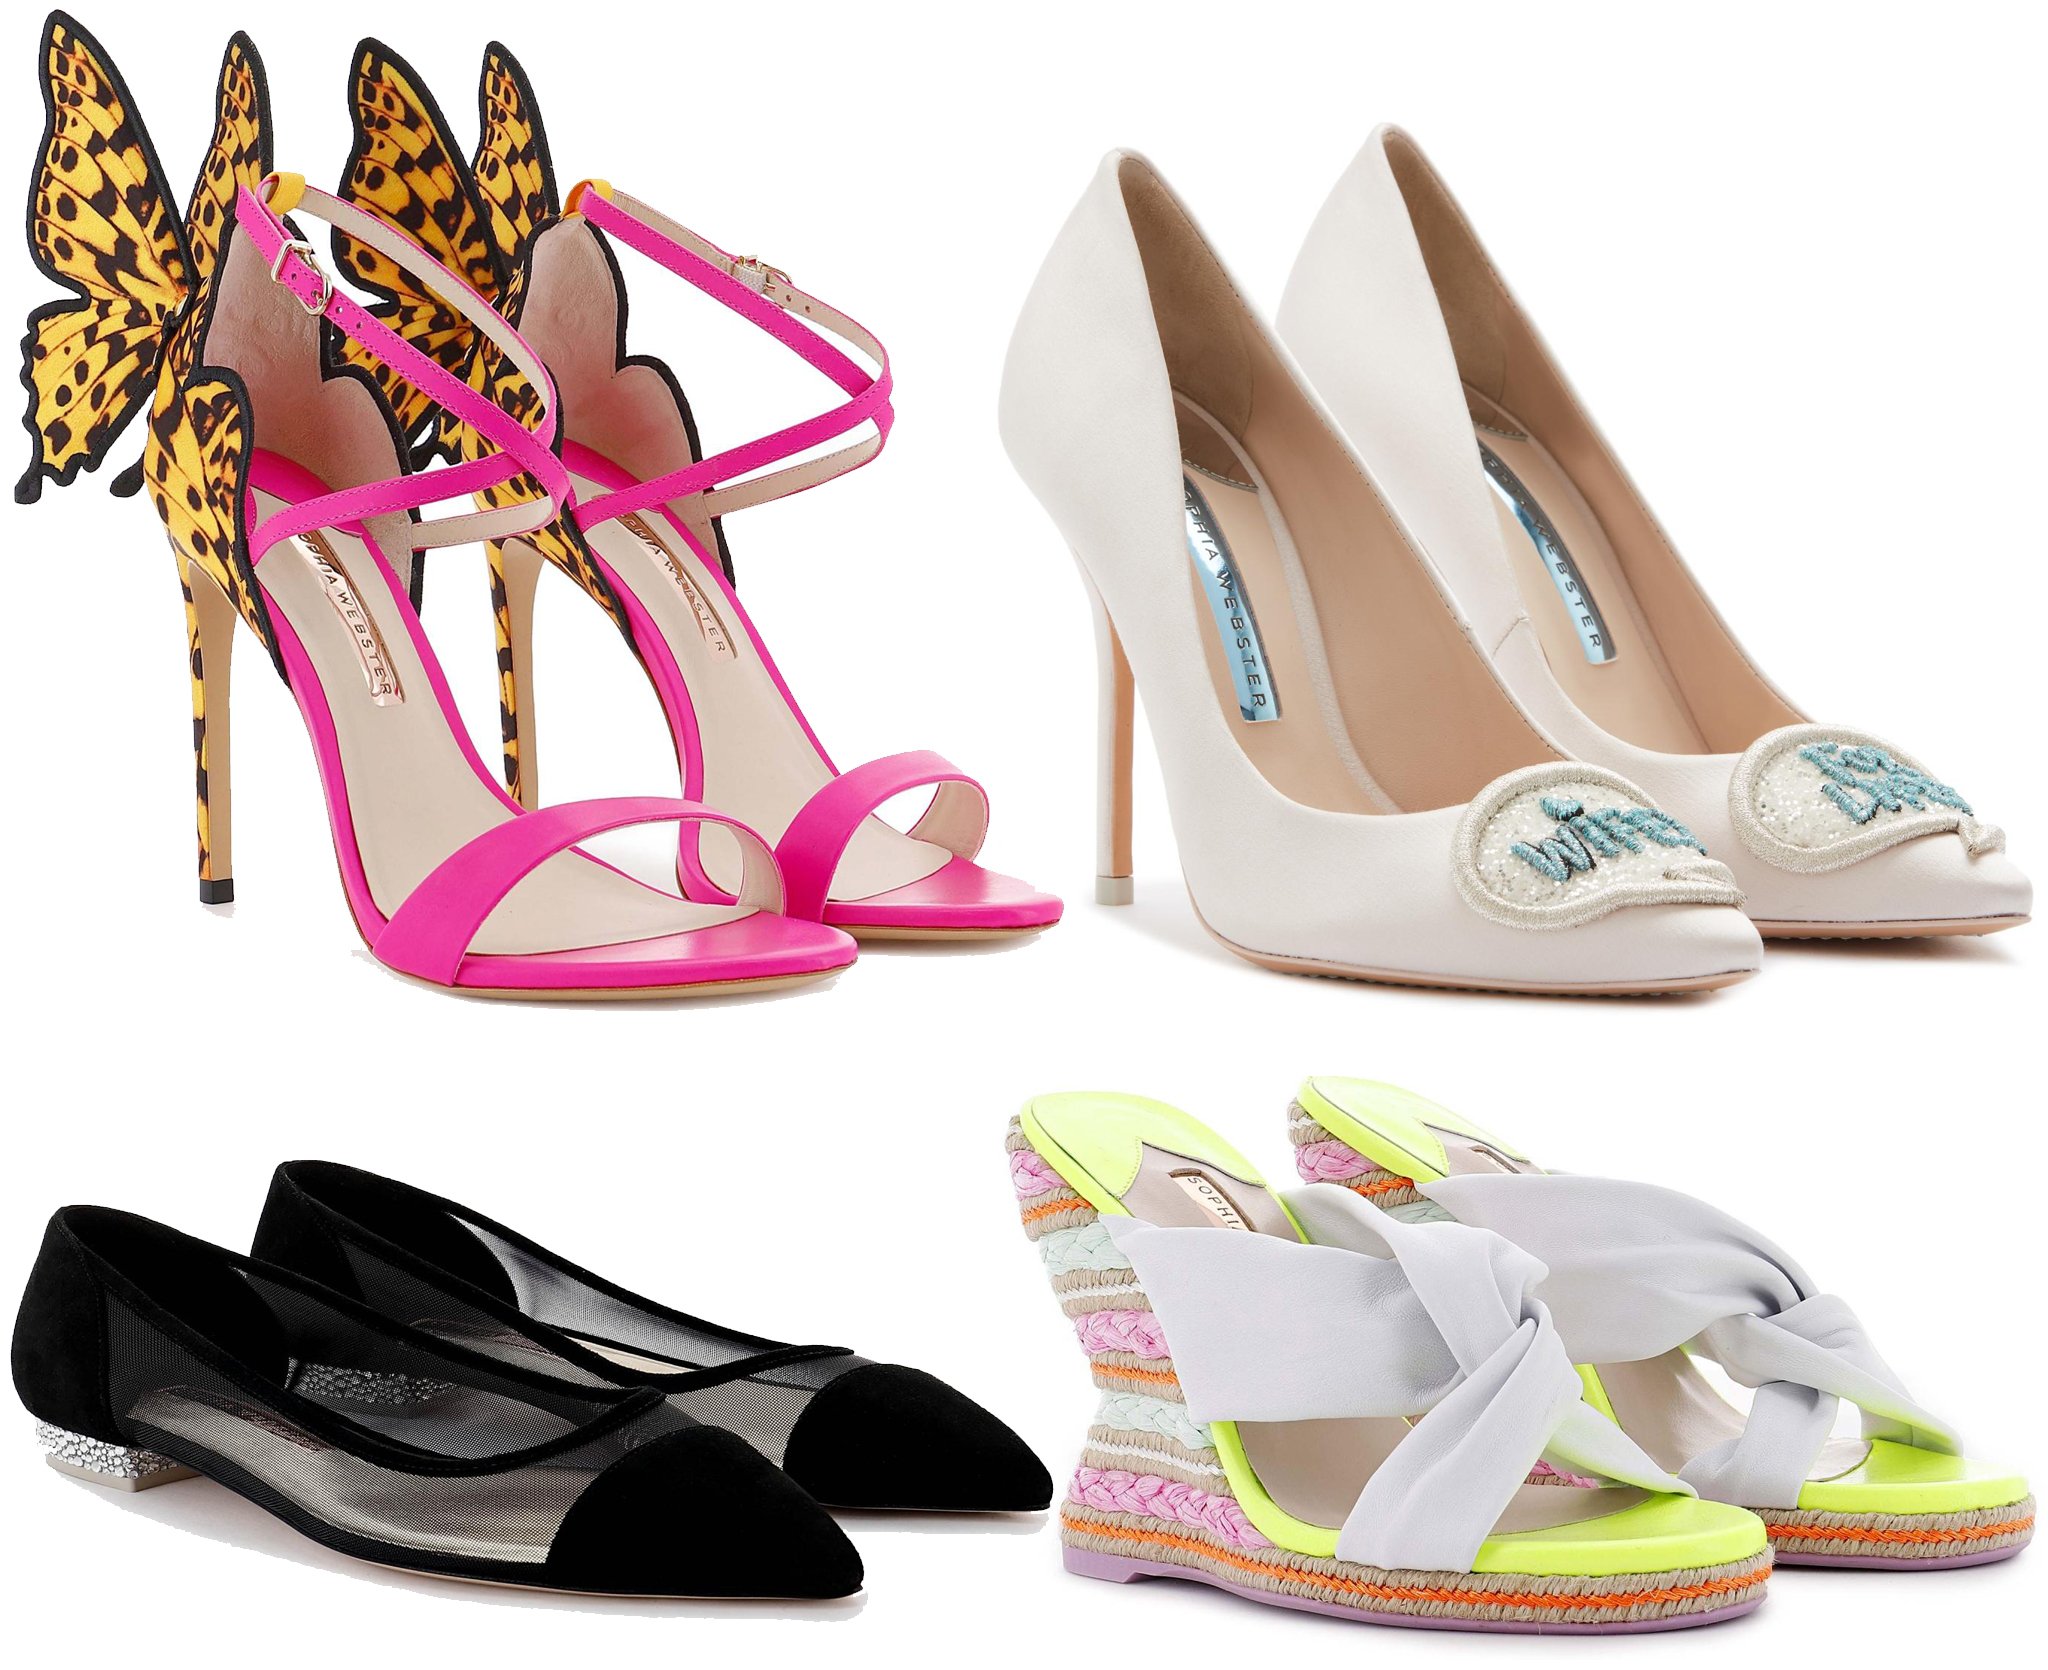 vacht Mijnwerker Attent 13 Most Popular Designer Shoe Brands for Women